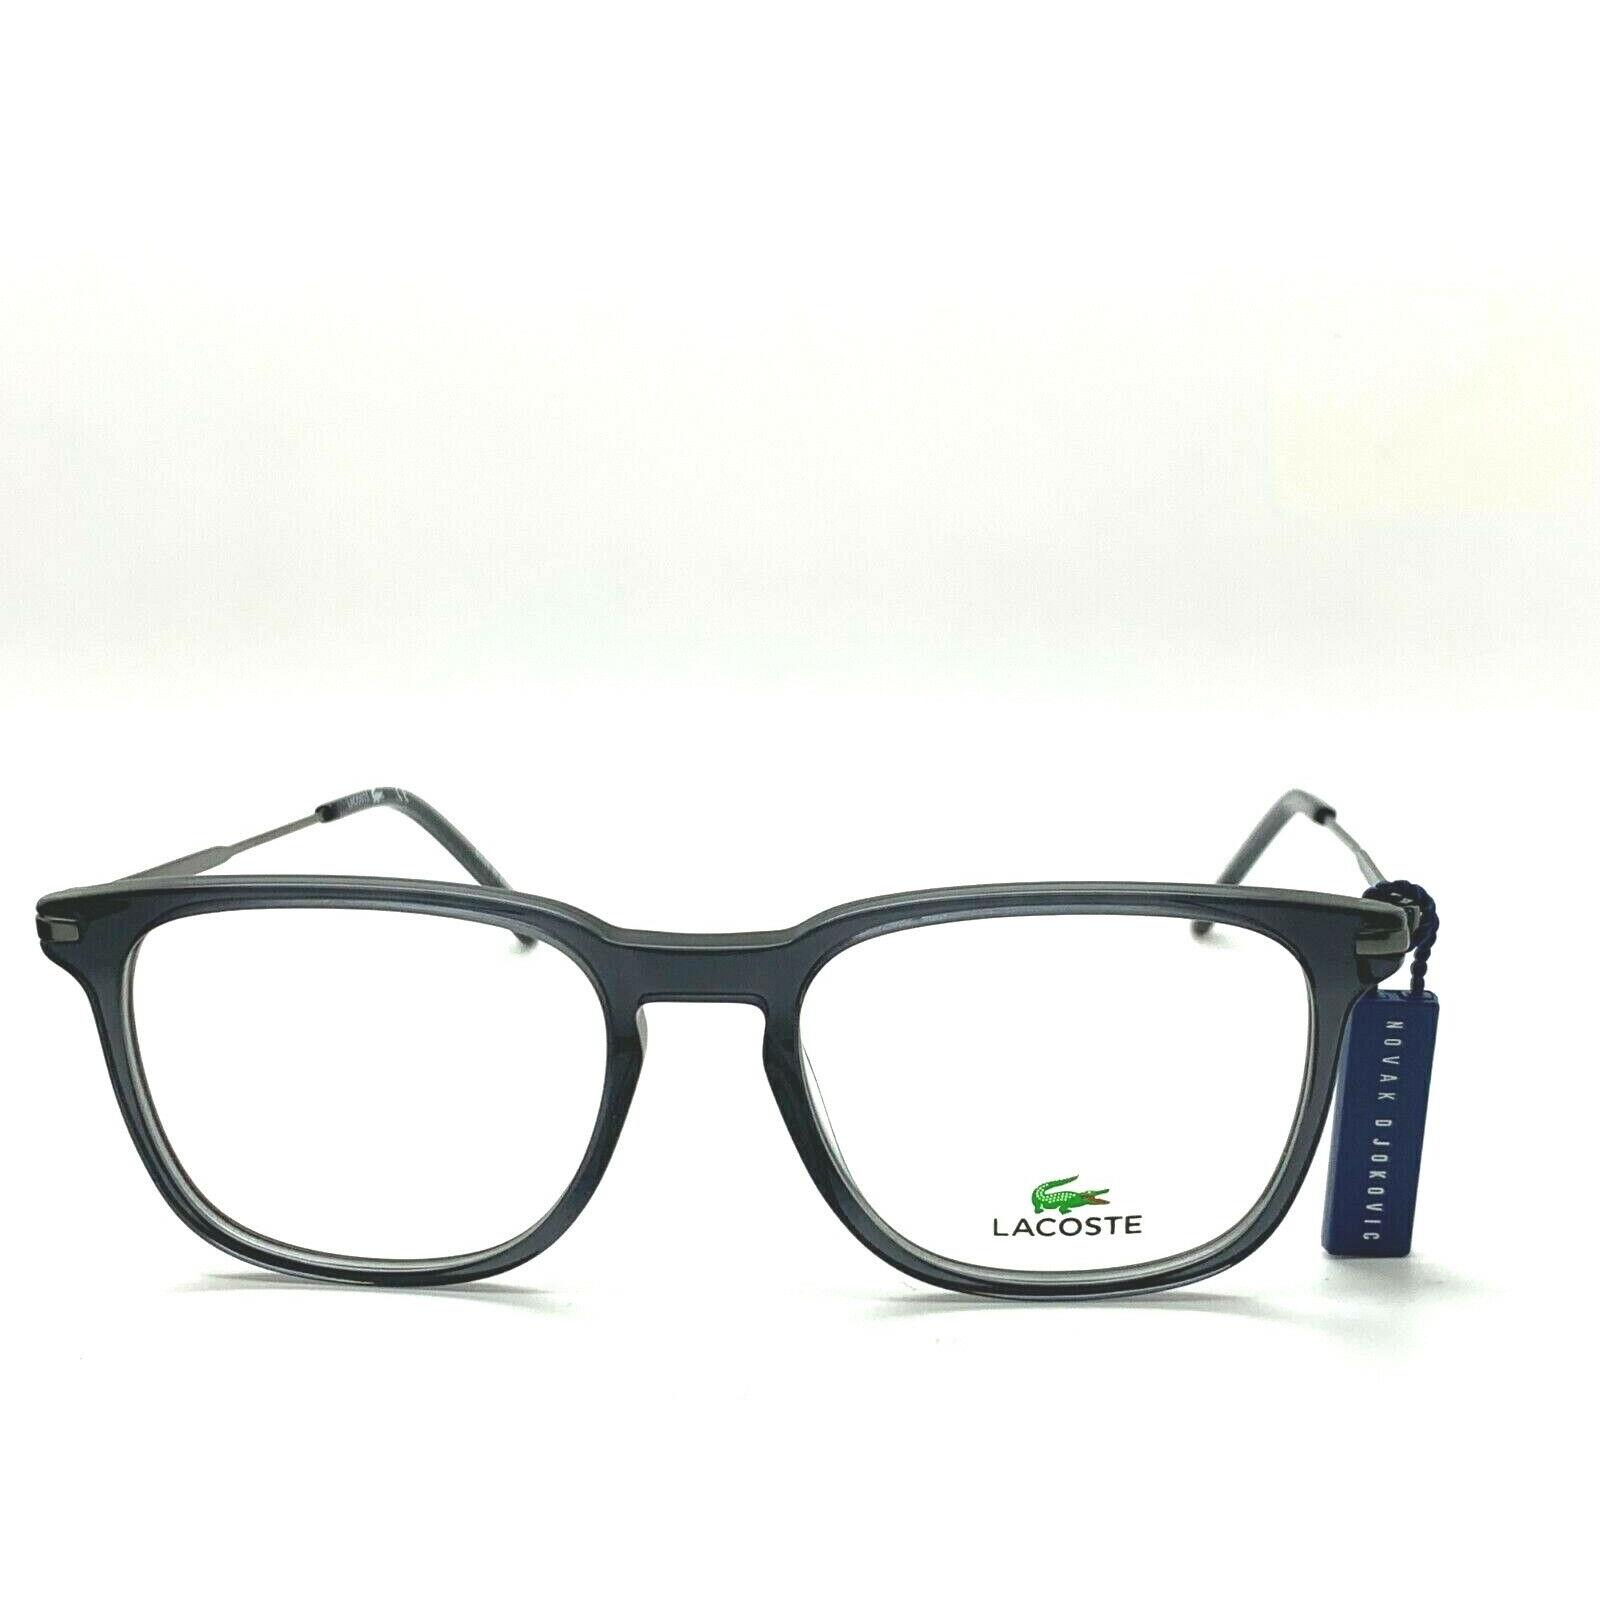 Lacoste eyeglasses  - TRANSPARENT DARK GREY Frame